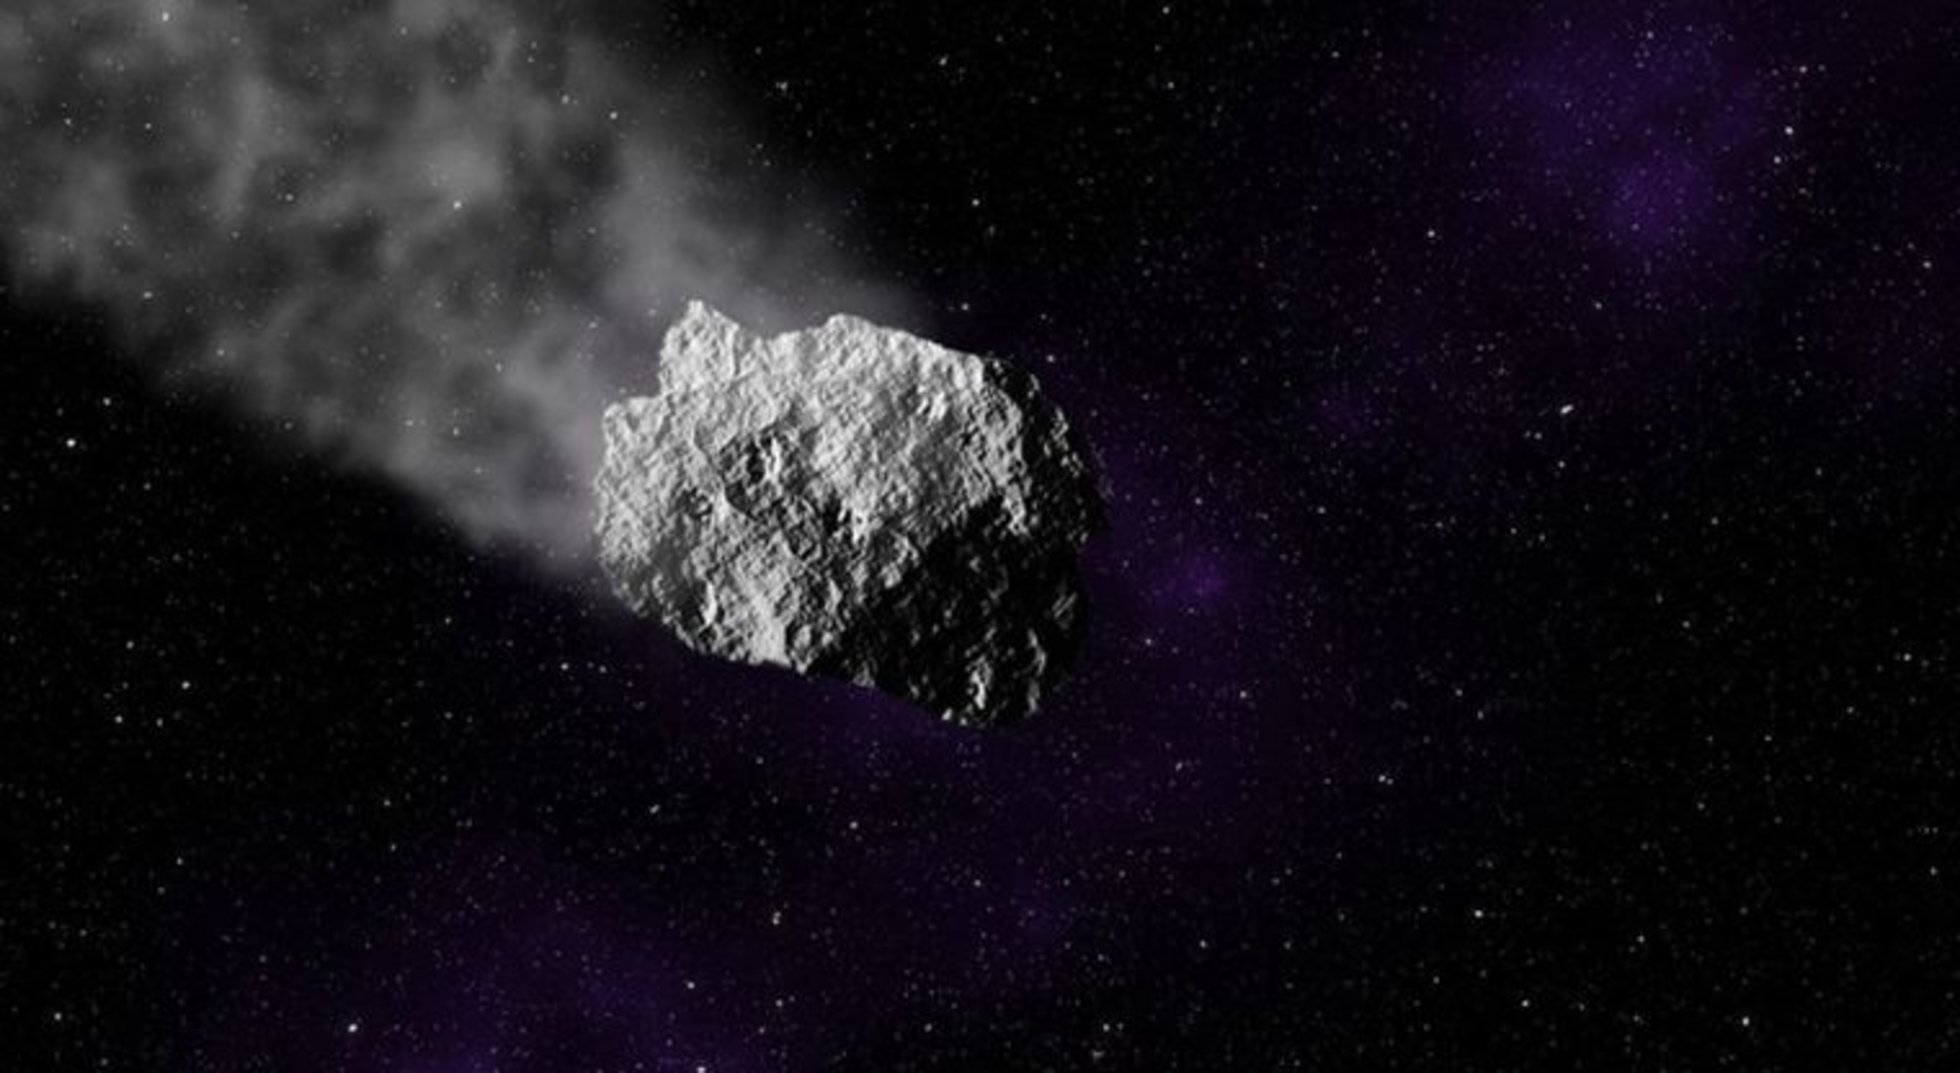 Asteroide gigante pasará cerca de la tierra el 1 de septiembre